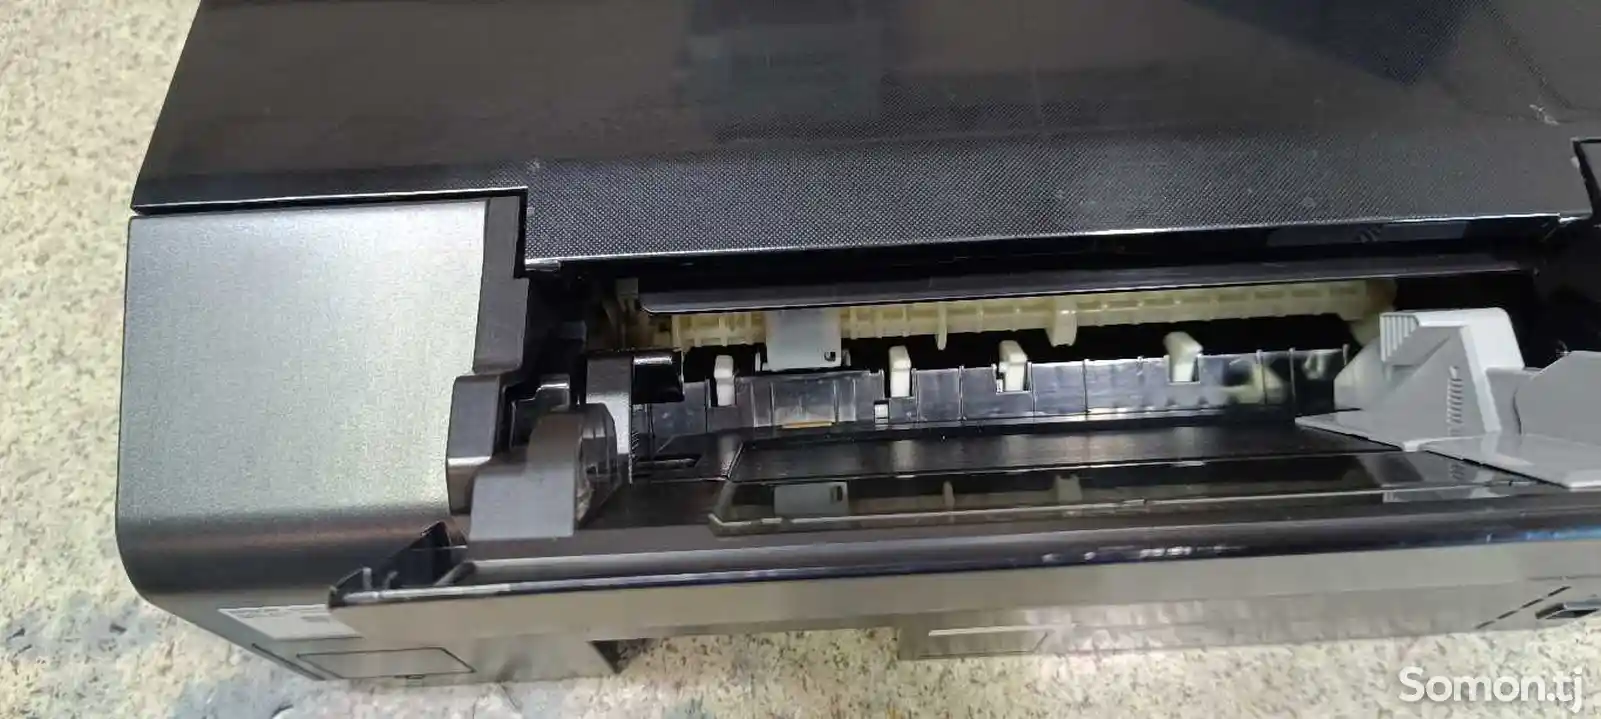 Цветной принтер Epson P50-5